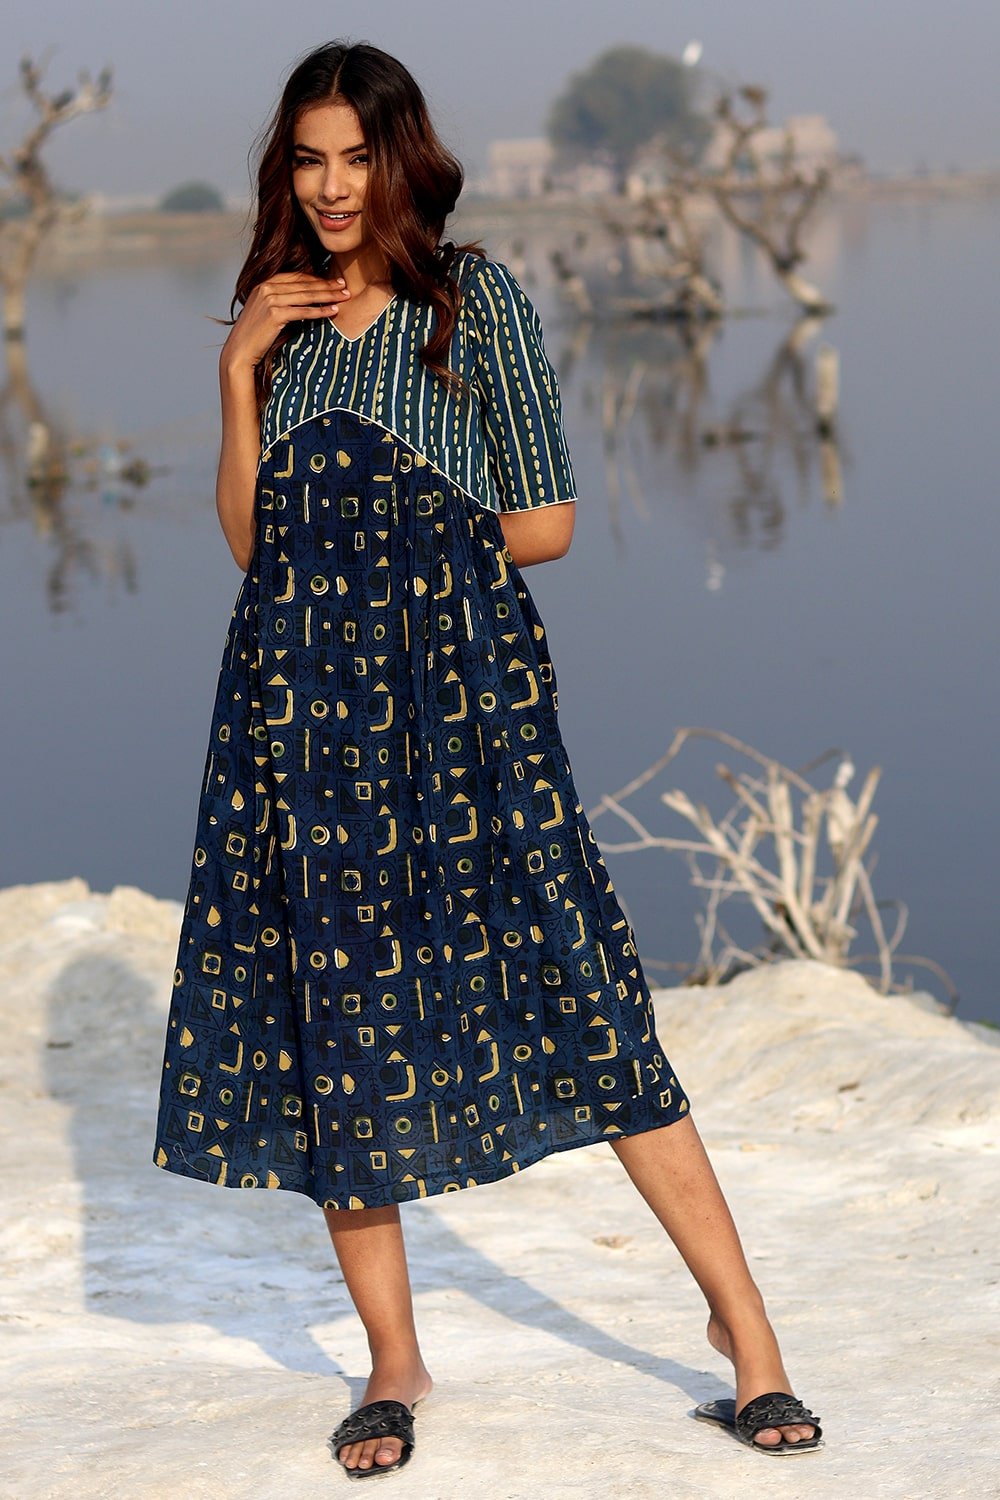 SootiSyahi 'Indigo Fusion' Block Printed Cotton Dress - SootiSyahi